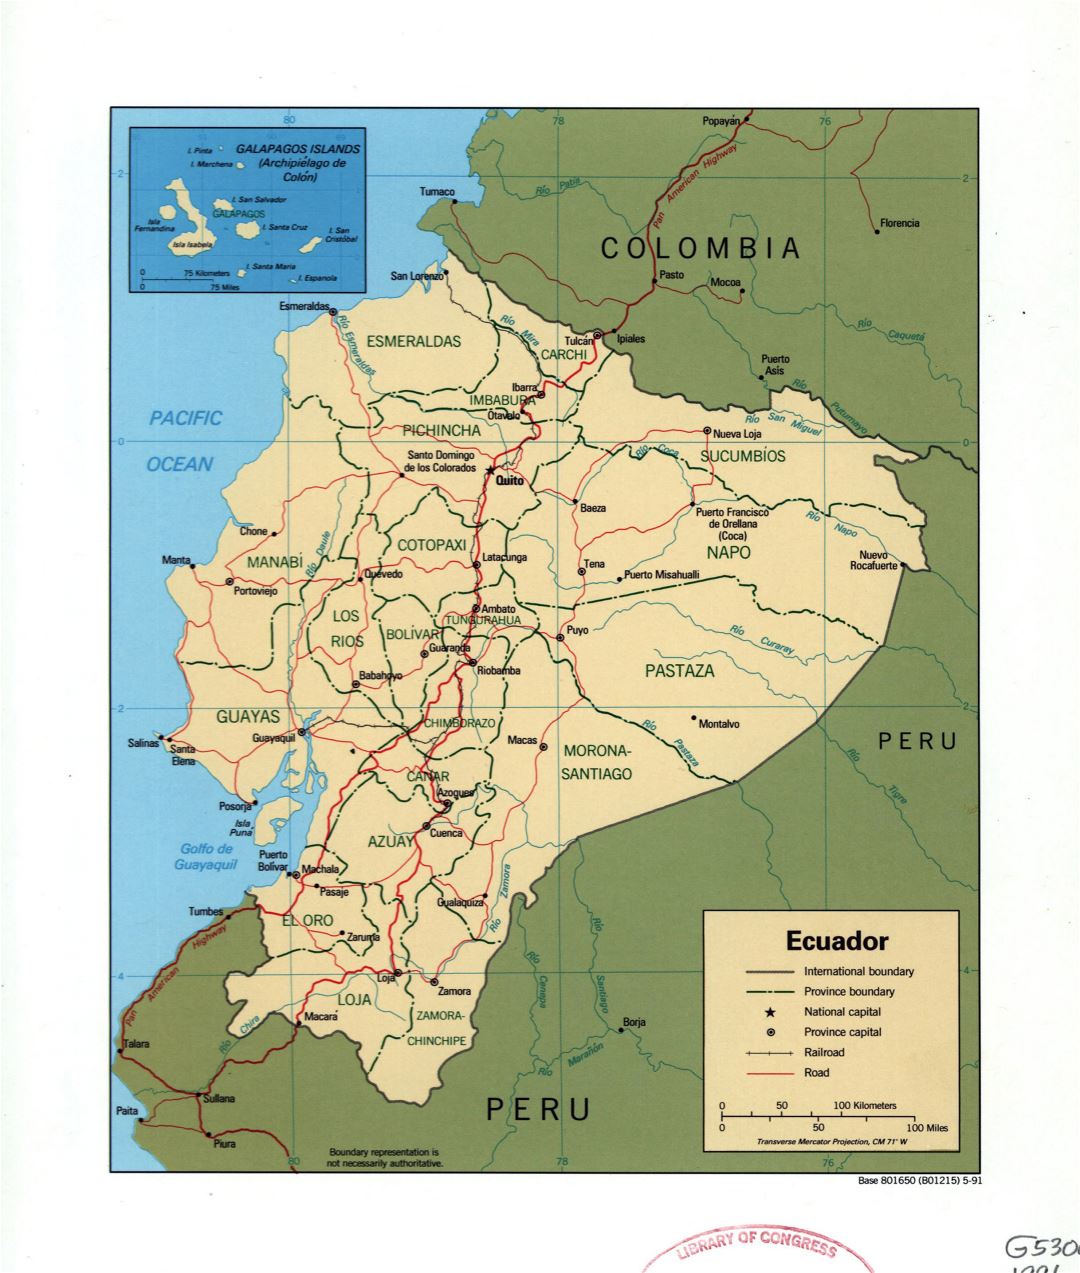 Большая подробная политическая и административная карта Эквадора с пометками городов, дорог и железных дорог - 1991